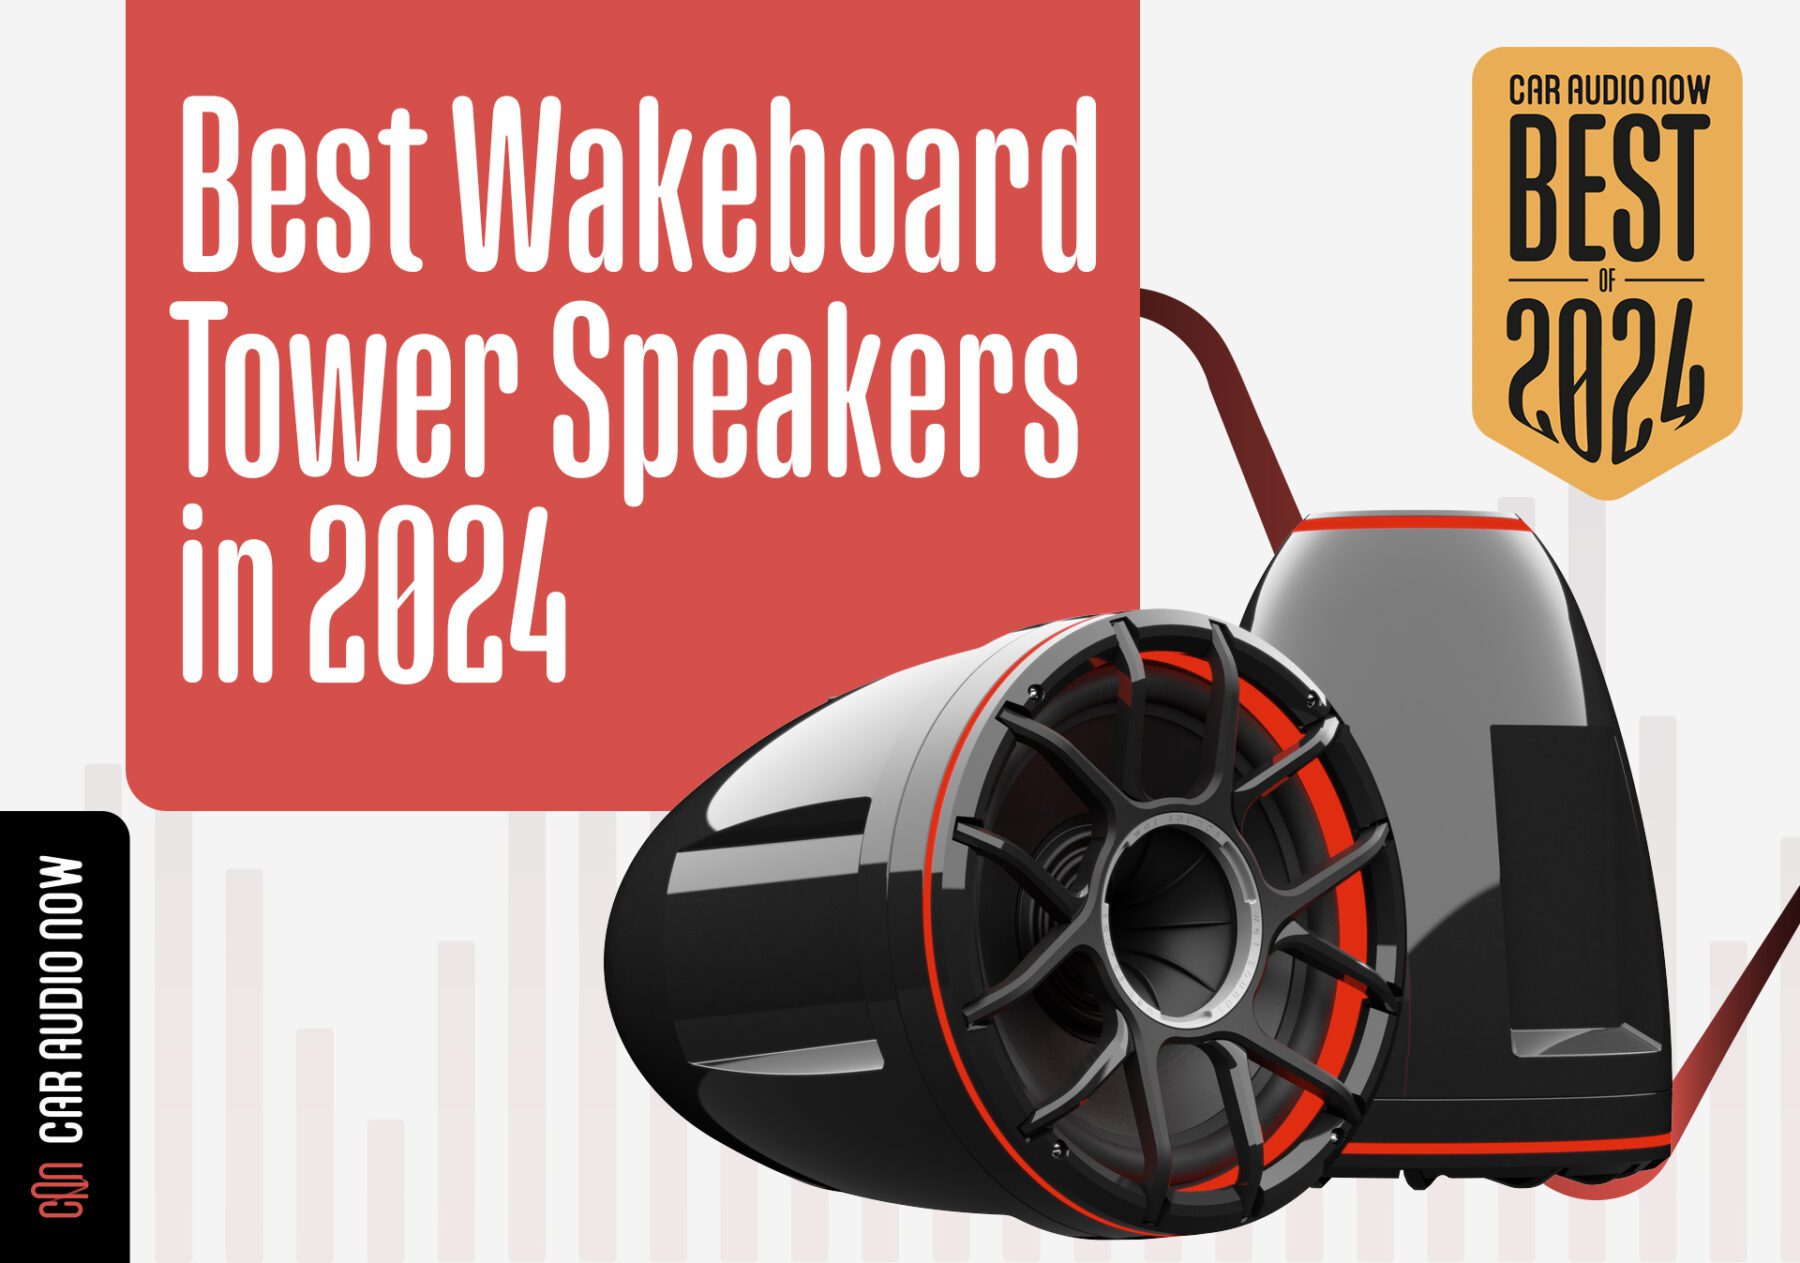 Best Boat Tower Speakers 2024 Hero